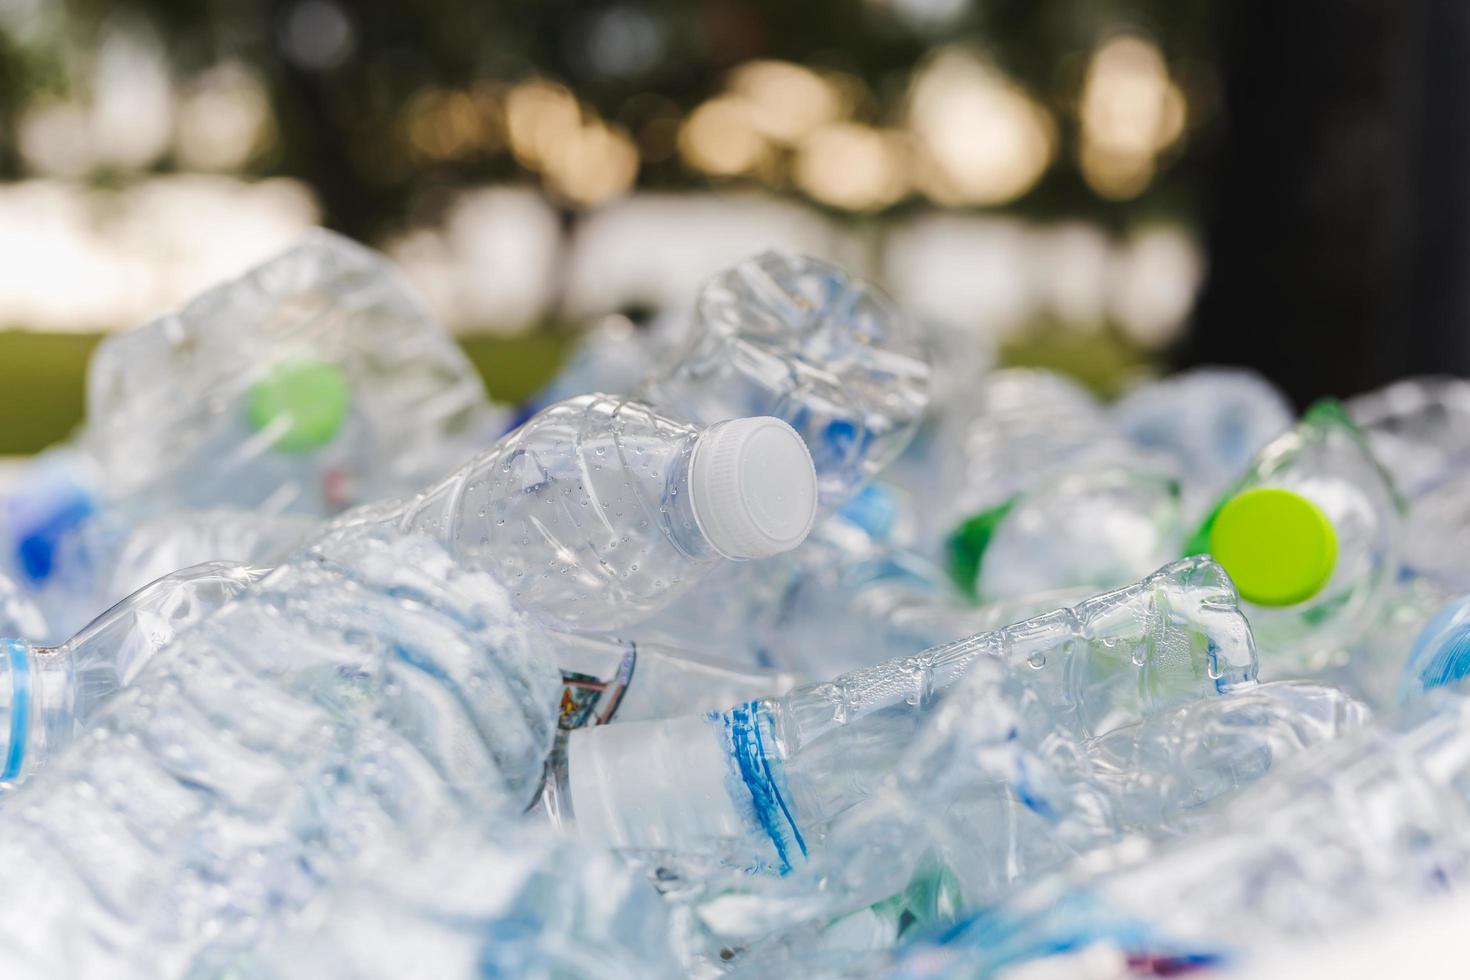 basura reciclable de botellas de plástico en el entorno conceptual del basurero. foto